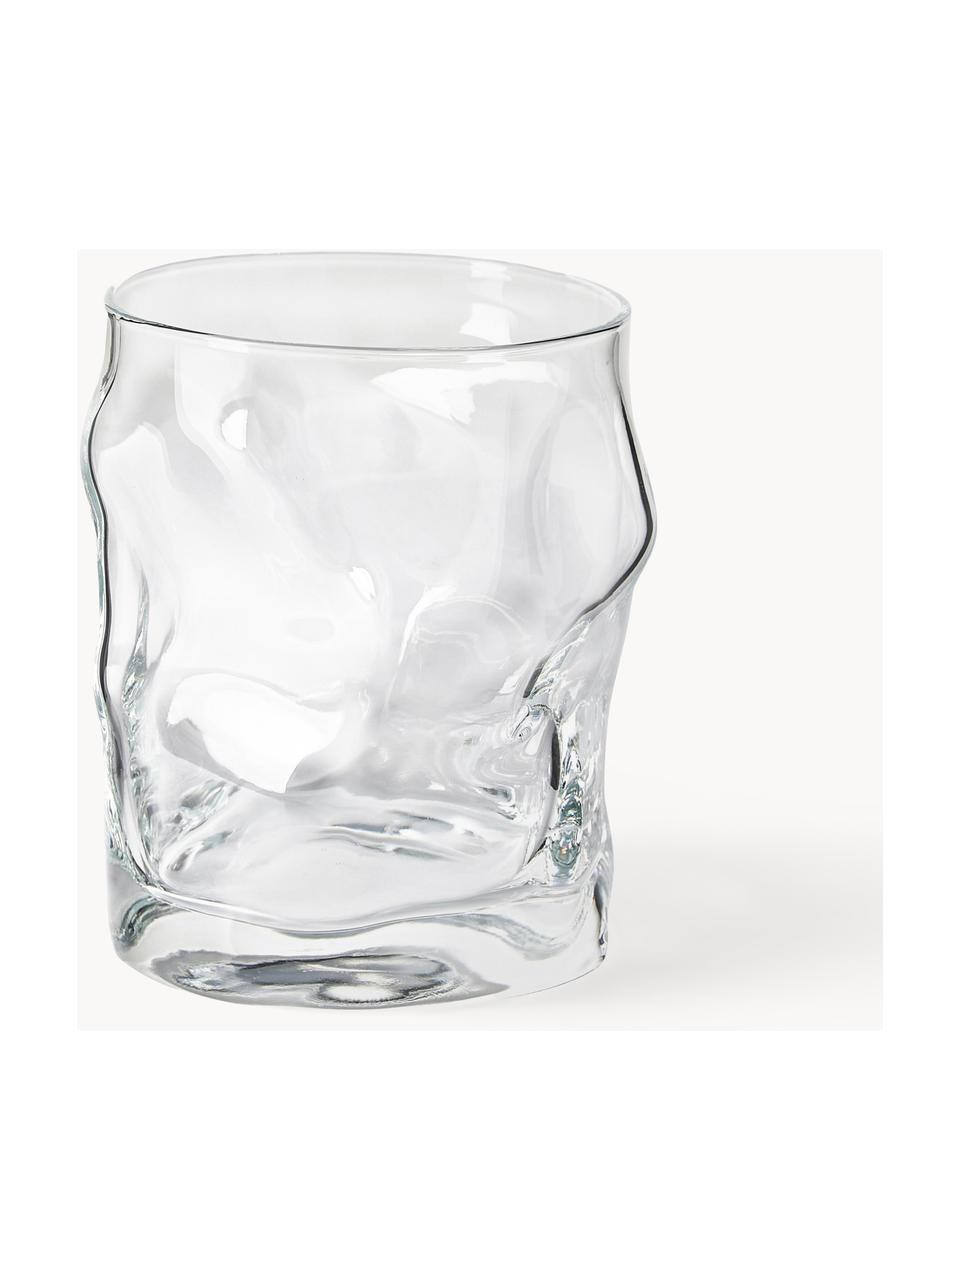 Wassergläser Sorgente in organischer Form, 6 Stück, Glas, Transparent, Ø 9 x H 11 cm, 420 ml